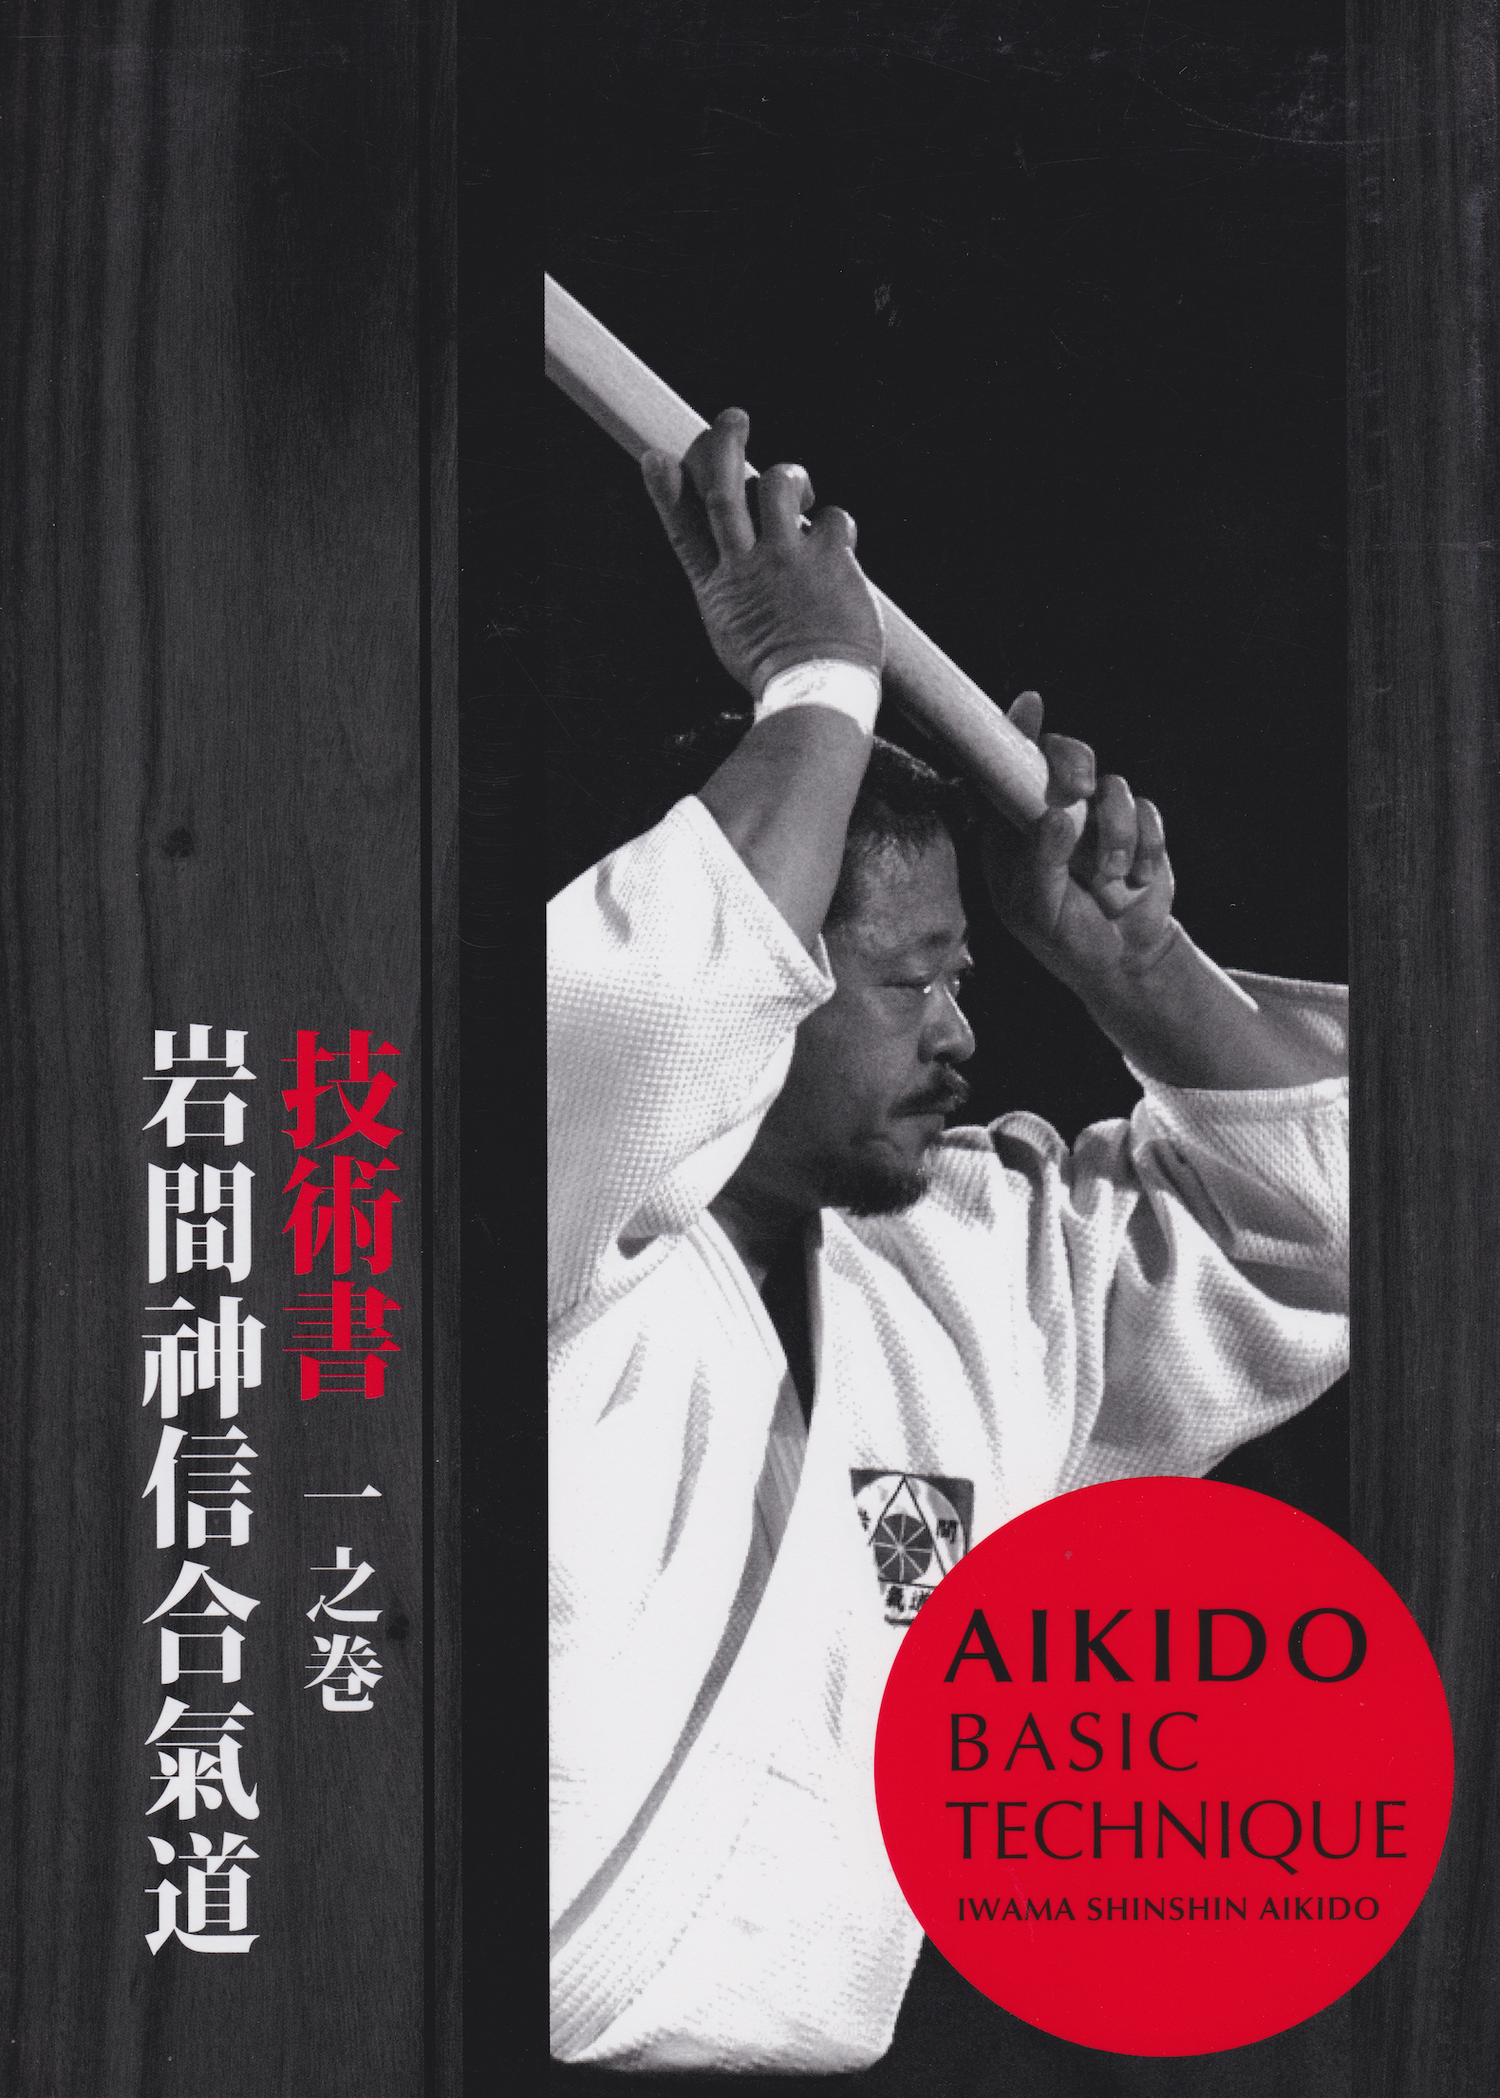 Libro 1 de técnicas básicas de Aikido de Hitohira Saito (usado) 